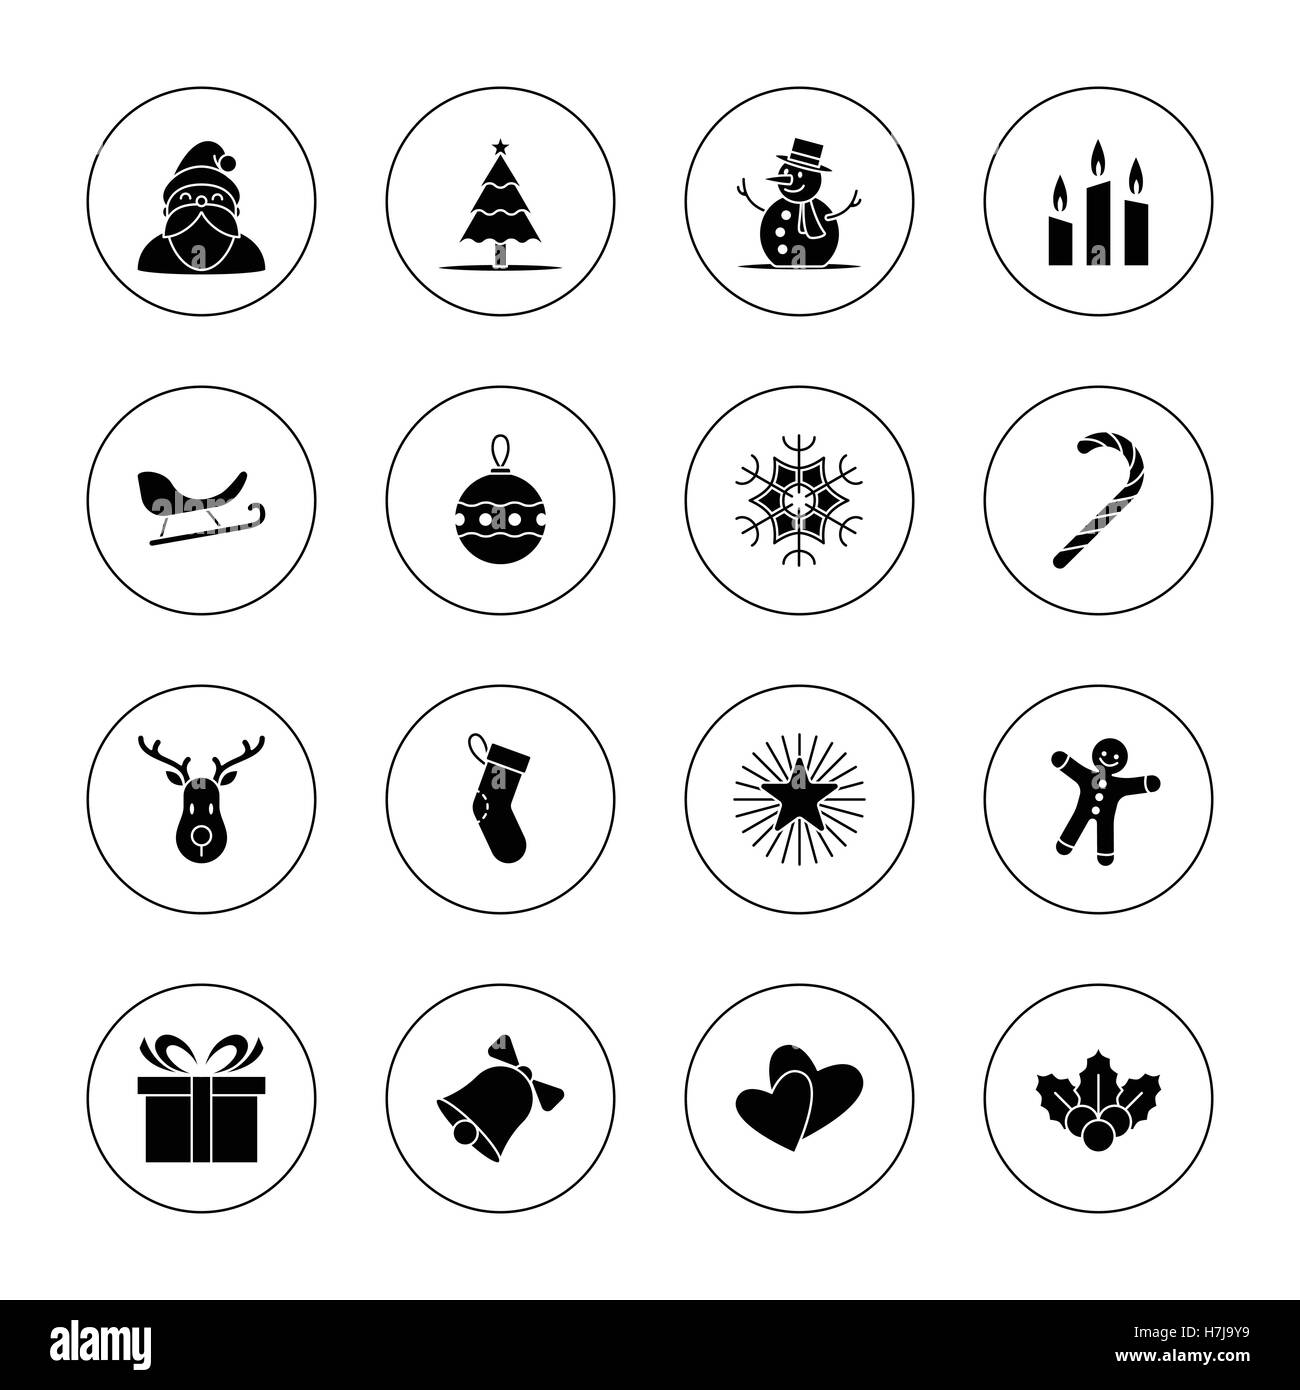 Weihnachten und Neujahr Symbolsatz Vektor-Illustration - schwarz mit Kreis-frame Stock Vektor